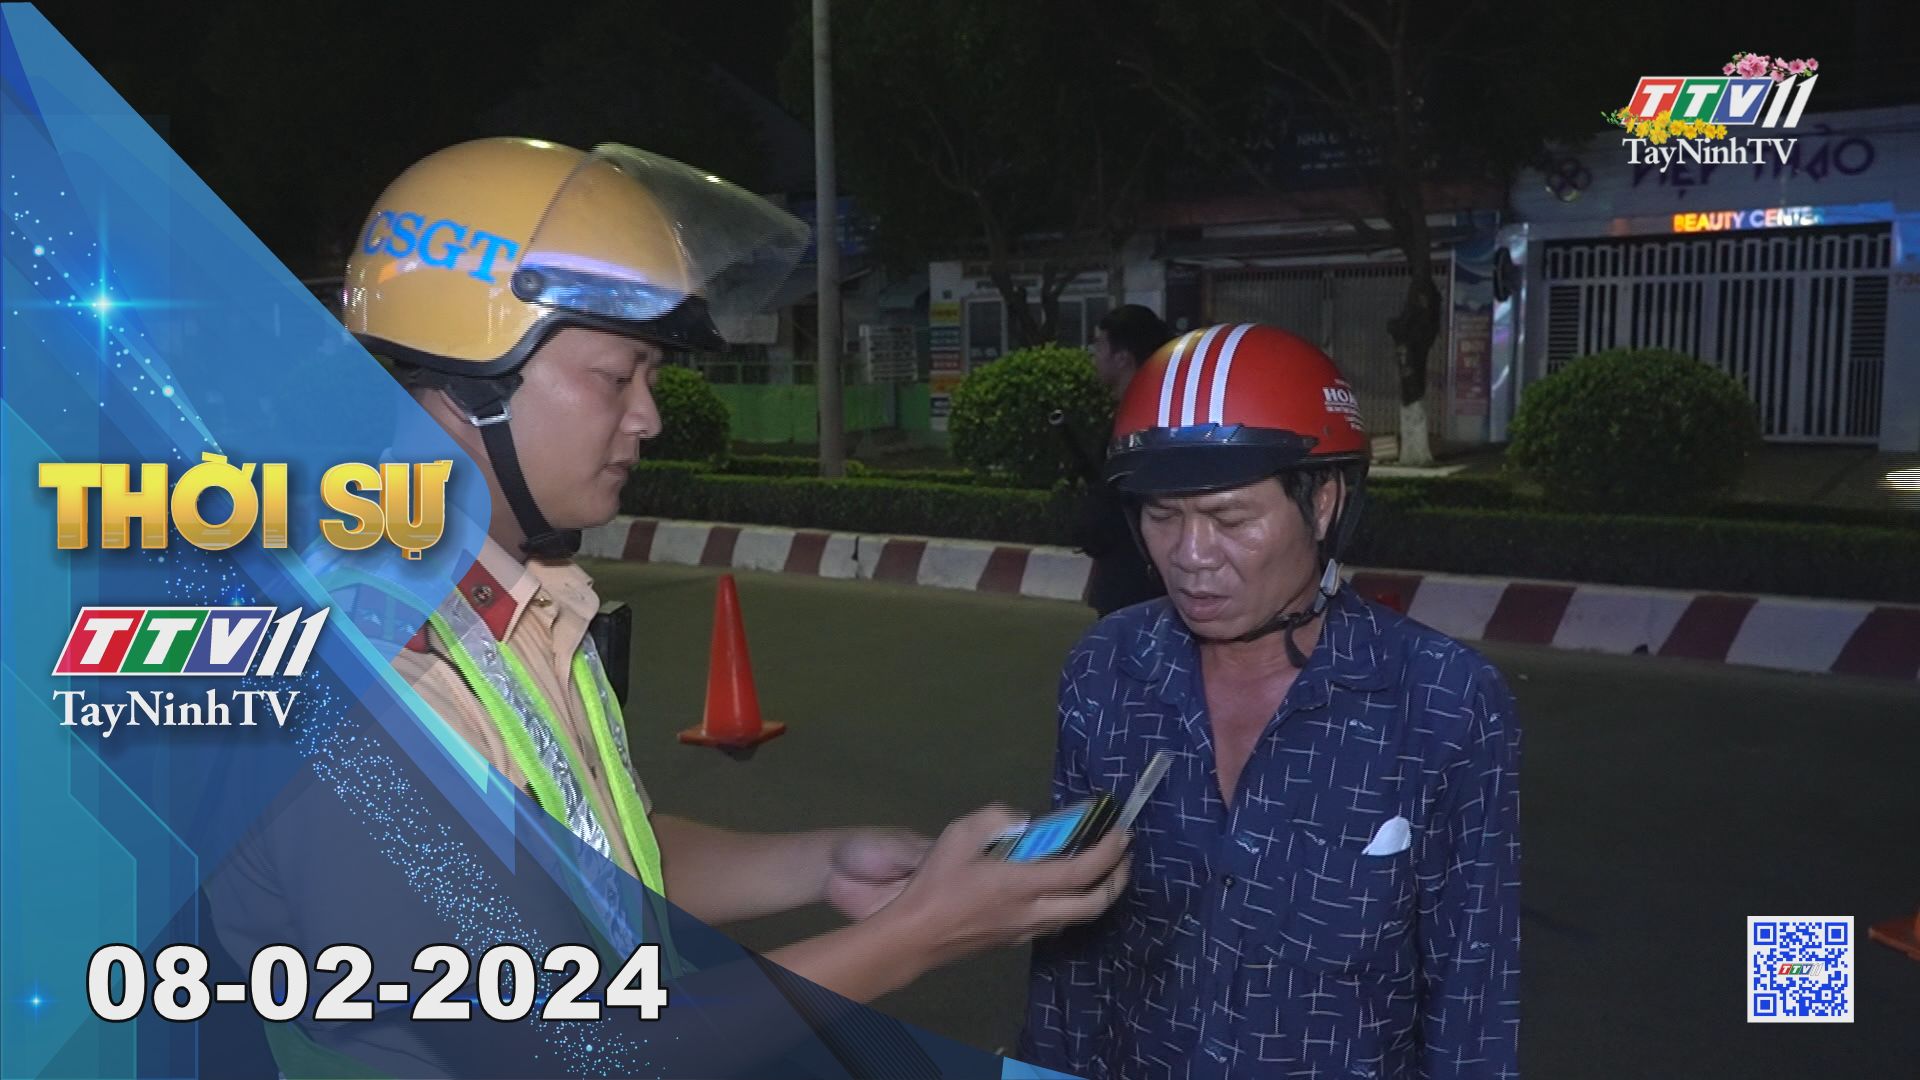 Thời sự Tây Ninh 08-02-2024 | Tin tức hôm nay | TayNinhTV